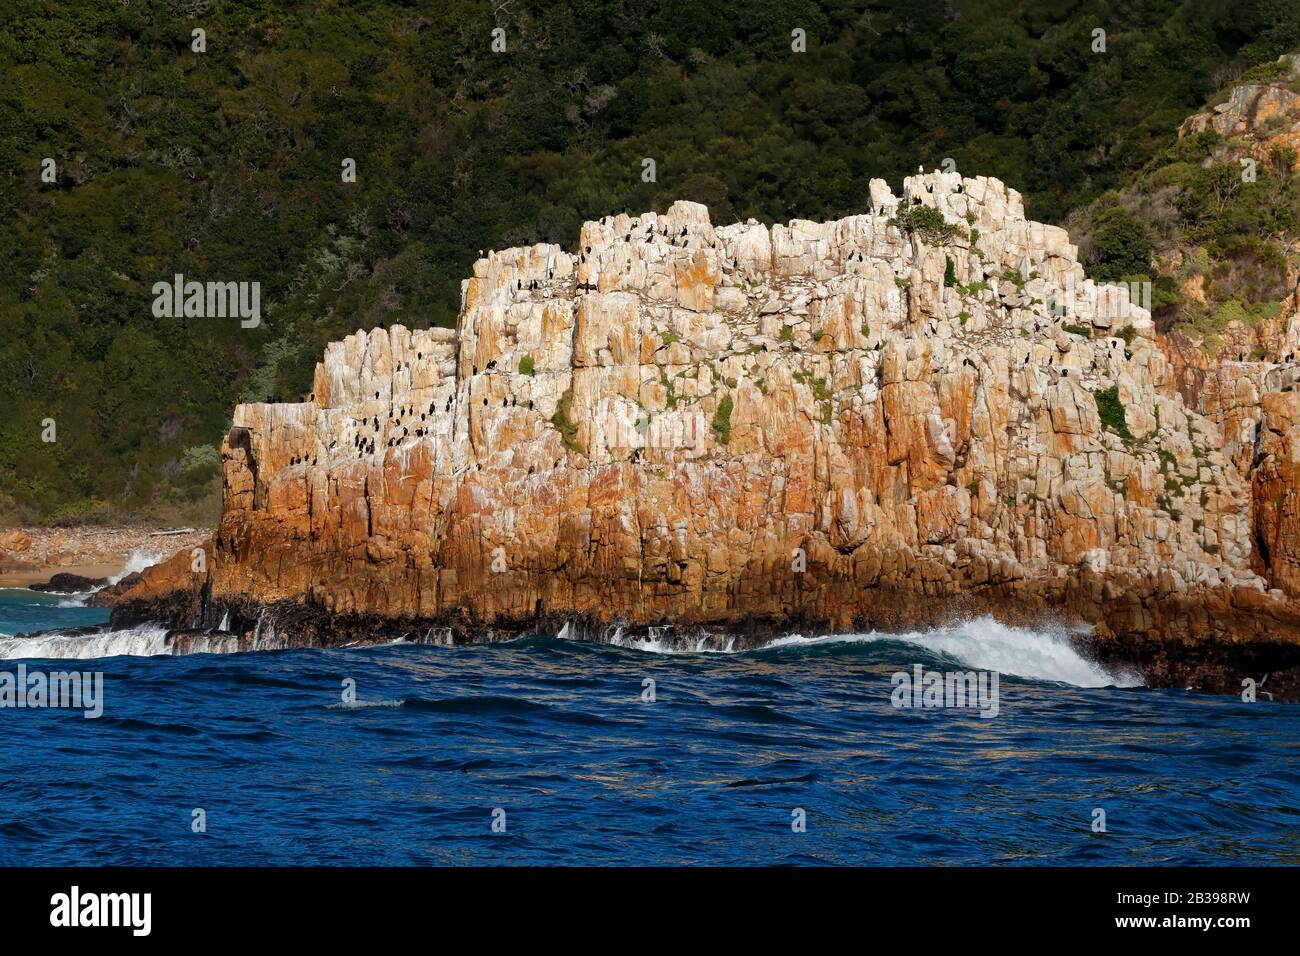 Paisaje marino con gran roca costera y una colonia de aves cormoranes, Sudáfrica Foto de stock